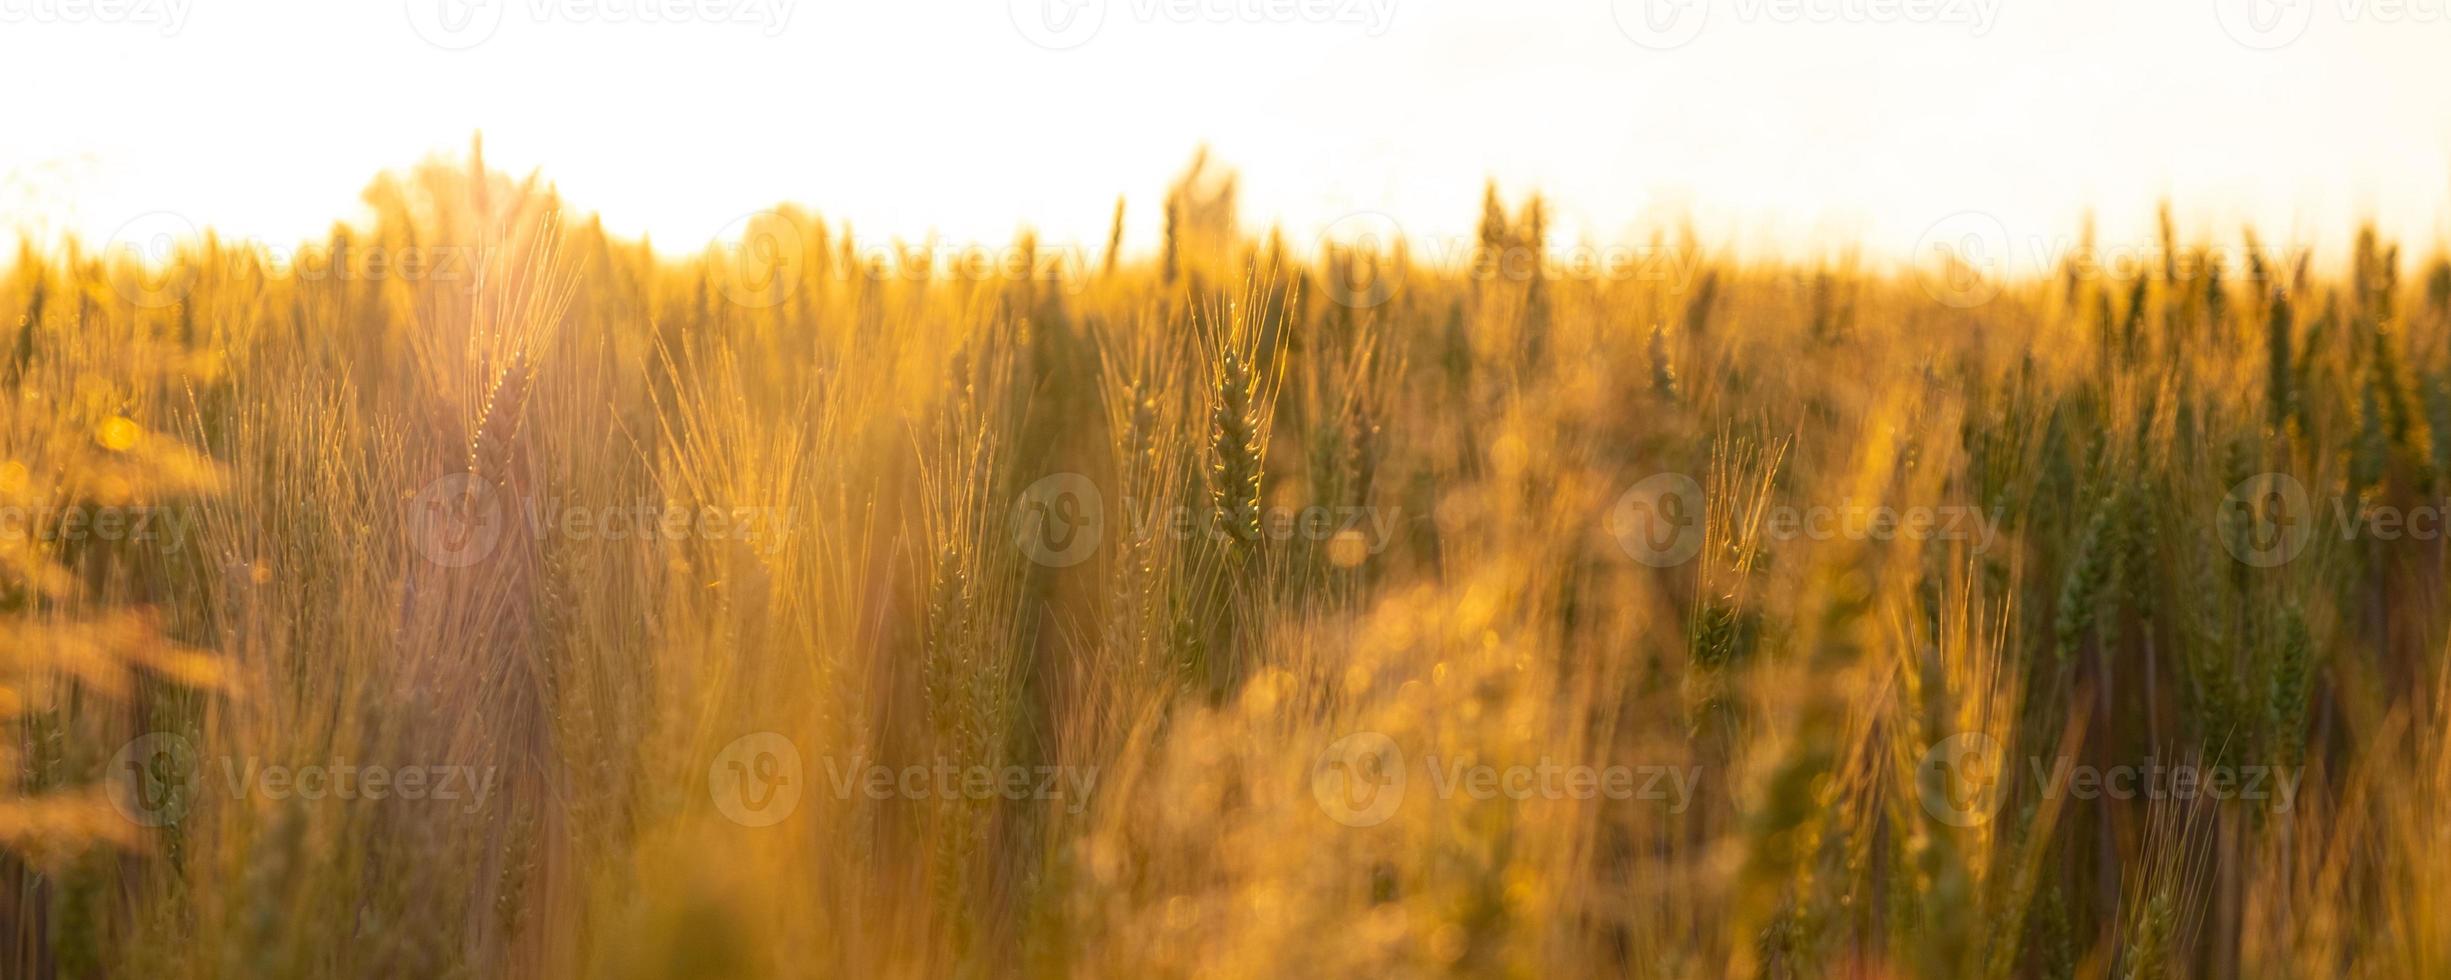 champ de blé dans les rayons soleil du matin, épillets à l'aube de lumière chaude orange photo